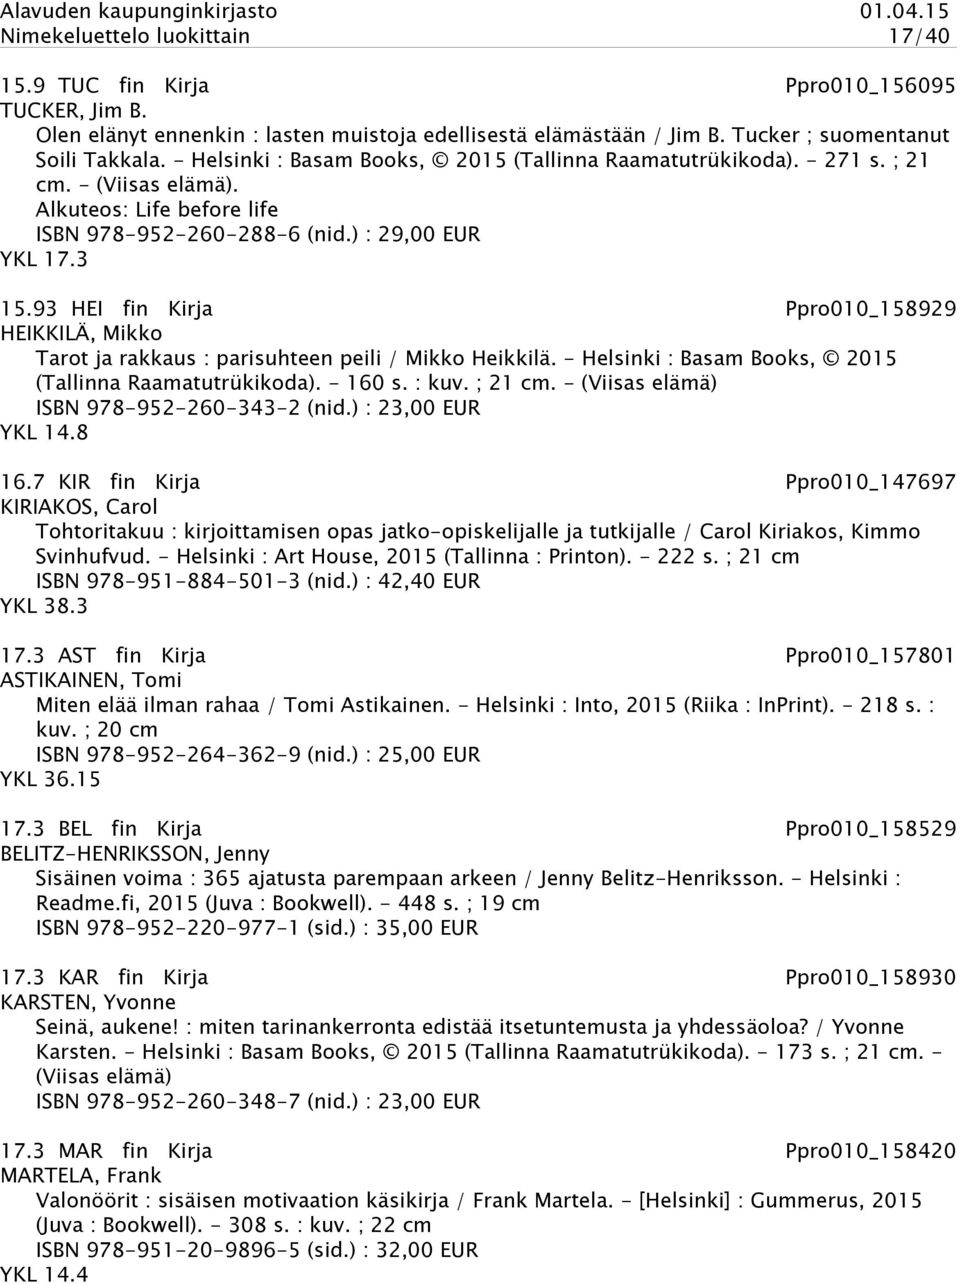 93 HEI fin Kirja Ppro010_158929 HEIKKILÄ, Mikko Tarot ja rakkaus : parisuhteen peili / Mikko Heikkilä. - Helsinki : Basam Books, 2015 (Tallinna Raamatutrükikoda). - 160 s. : kuv. ; 21 cm.